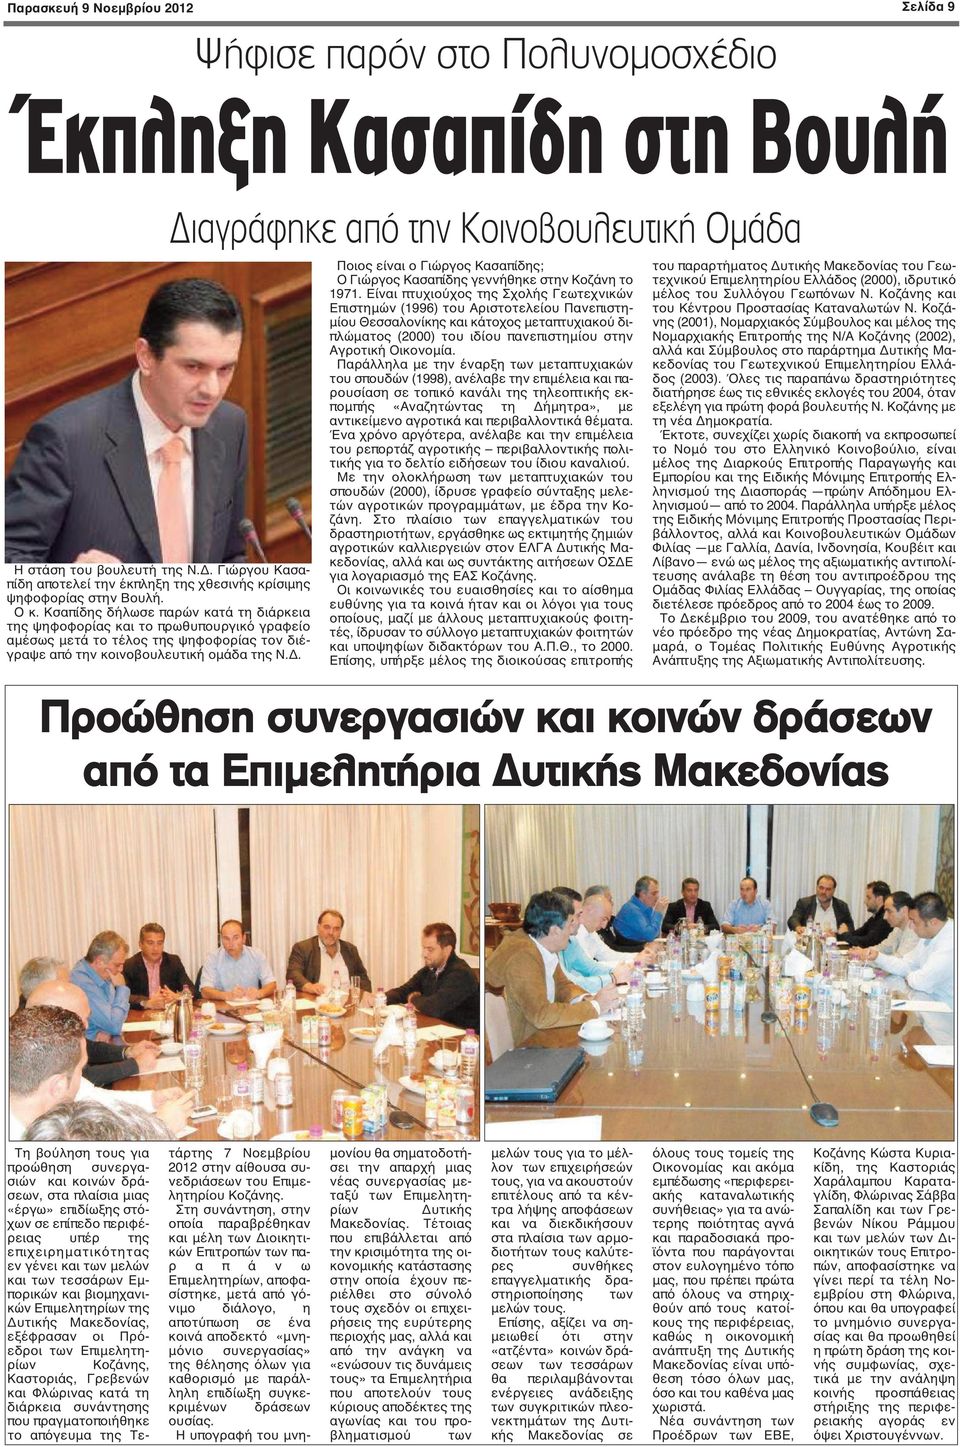 Κσαπίδης δήλωσε παρών κατά τη διάρκεια της ψηφοφορίας και το πρωθυπουργικό γραφείο αμέσως μετά το τέλος της ψηφοφορίας τον διέγραψε από την κοινοβουλευτική ομάδα της Ν.Δ.